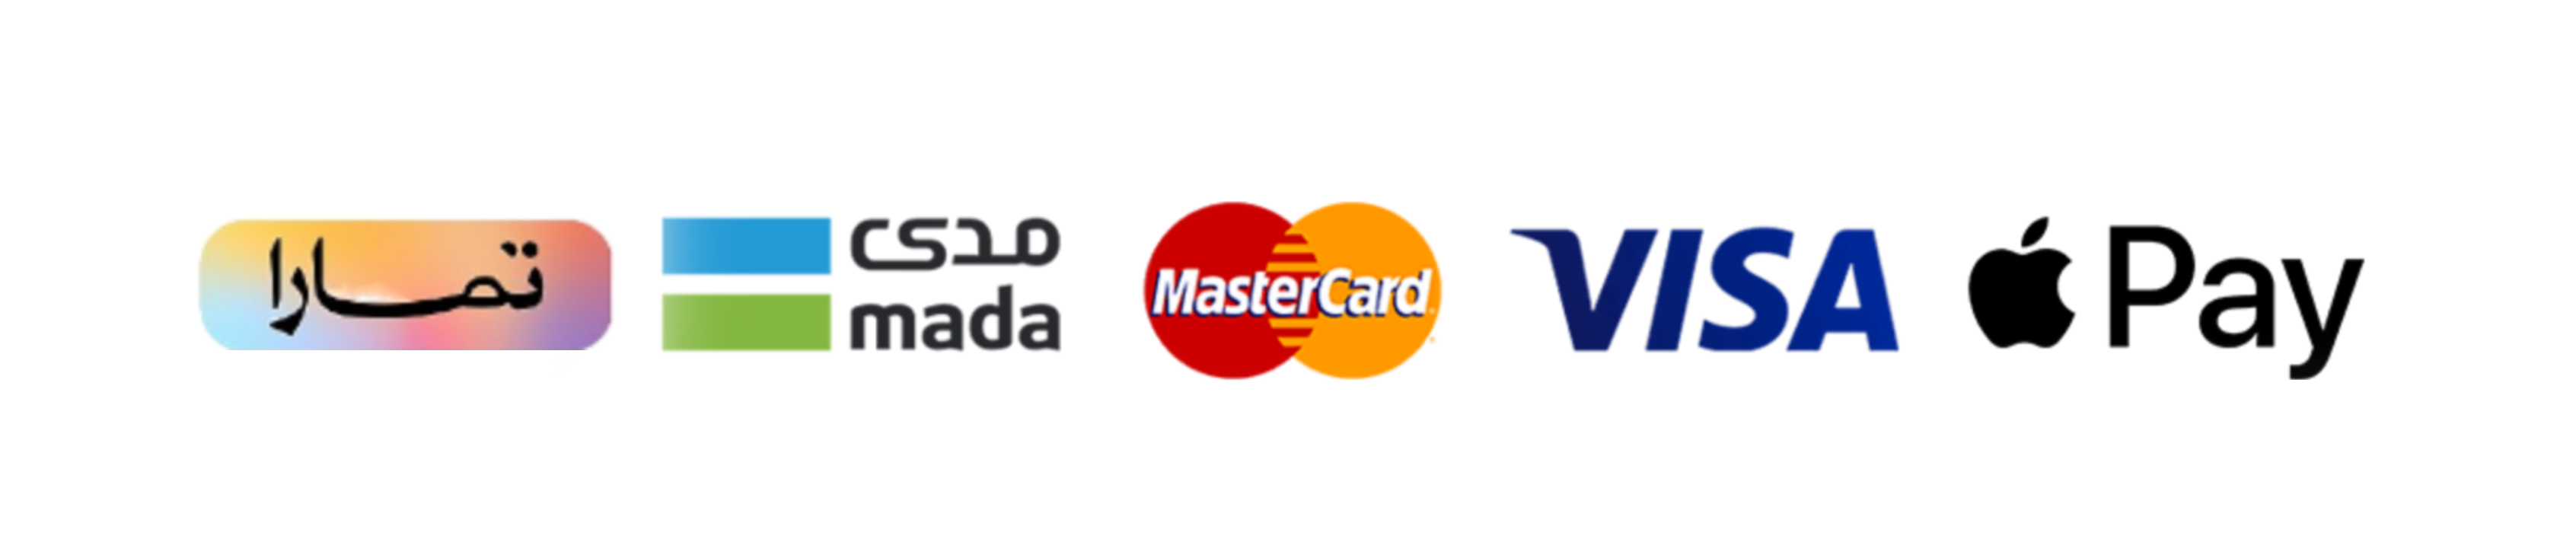 Payment logo